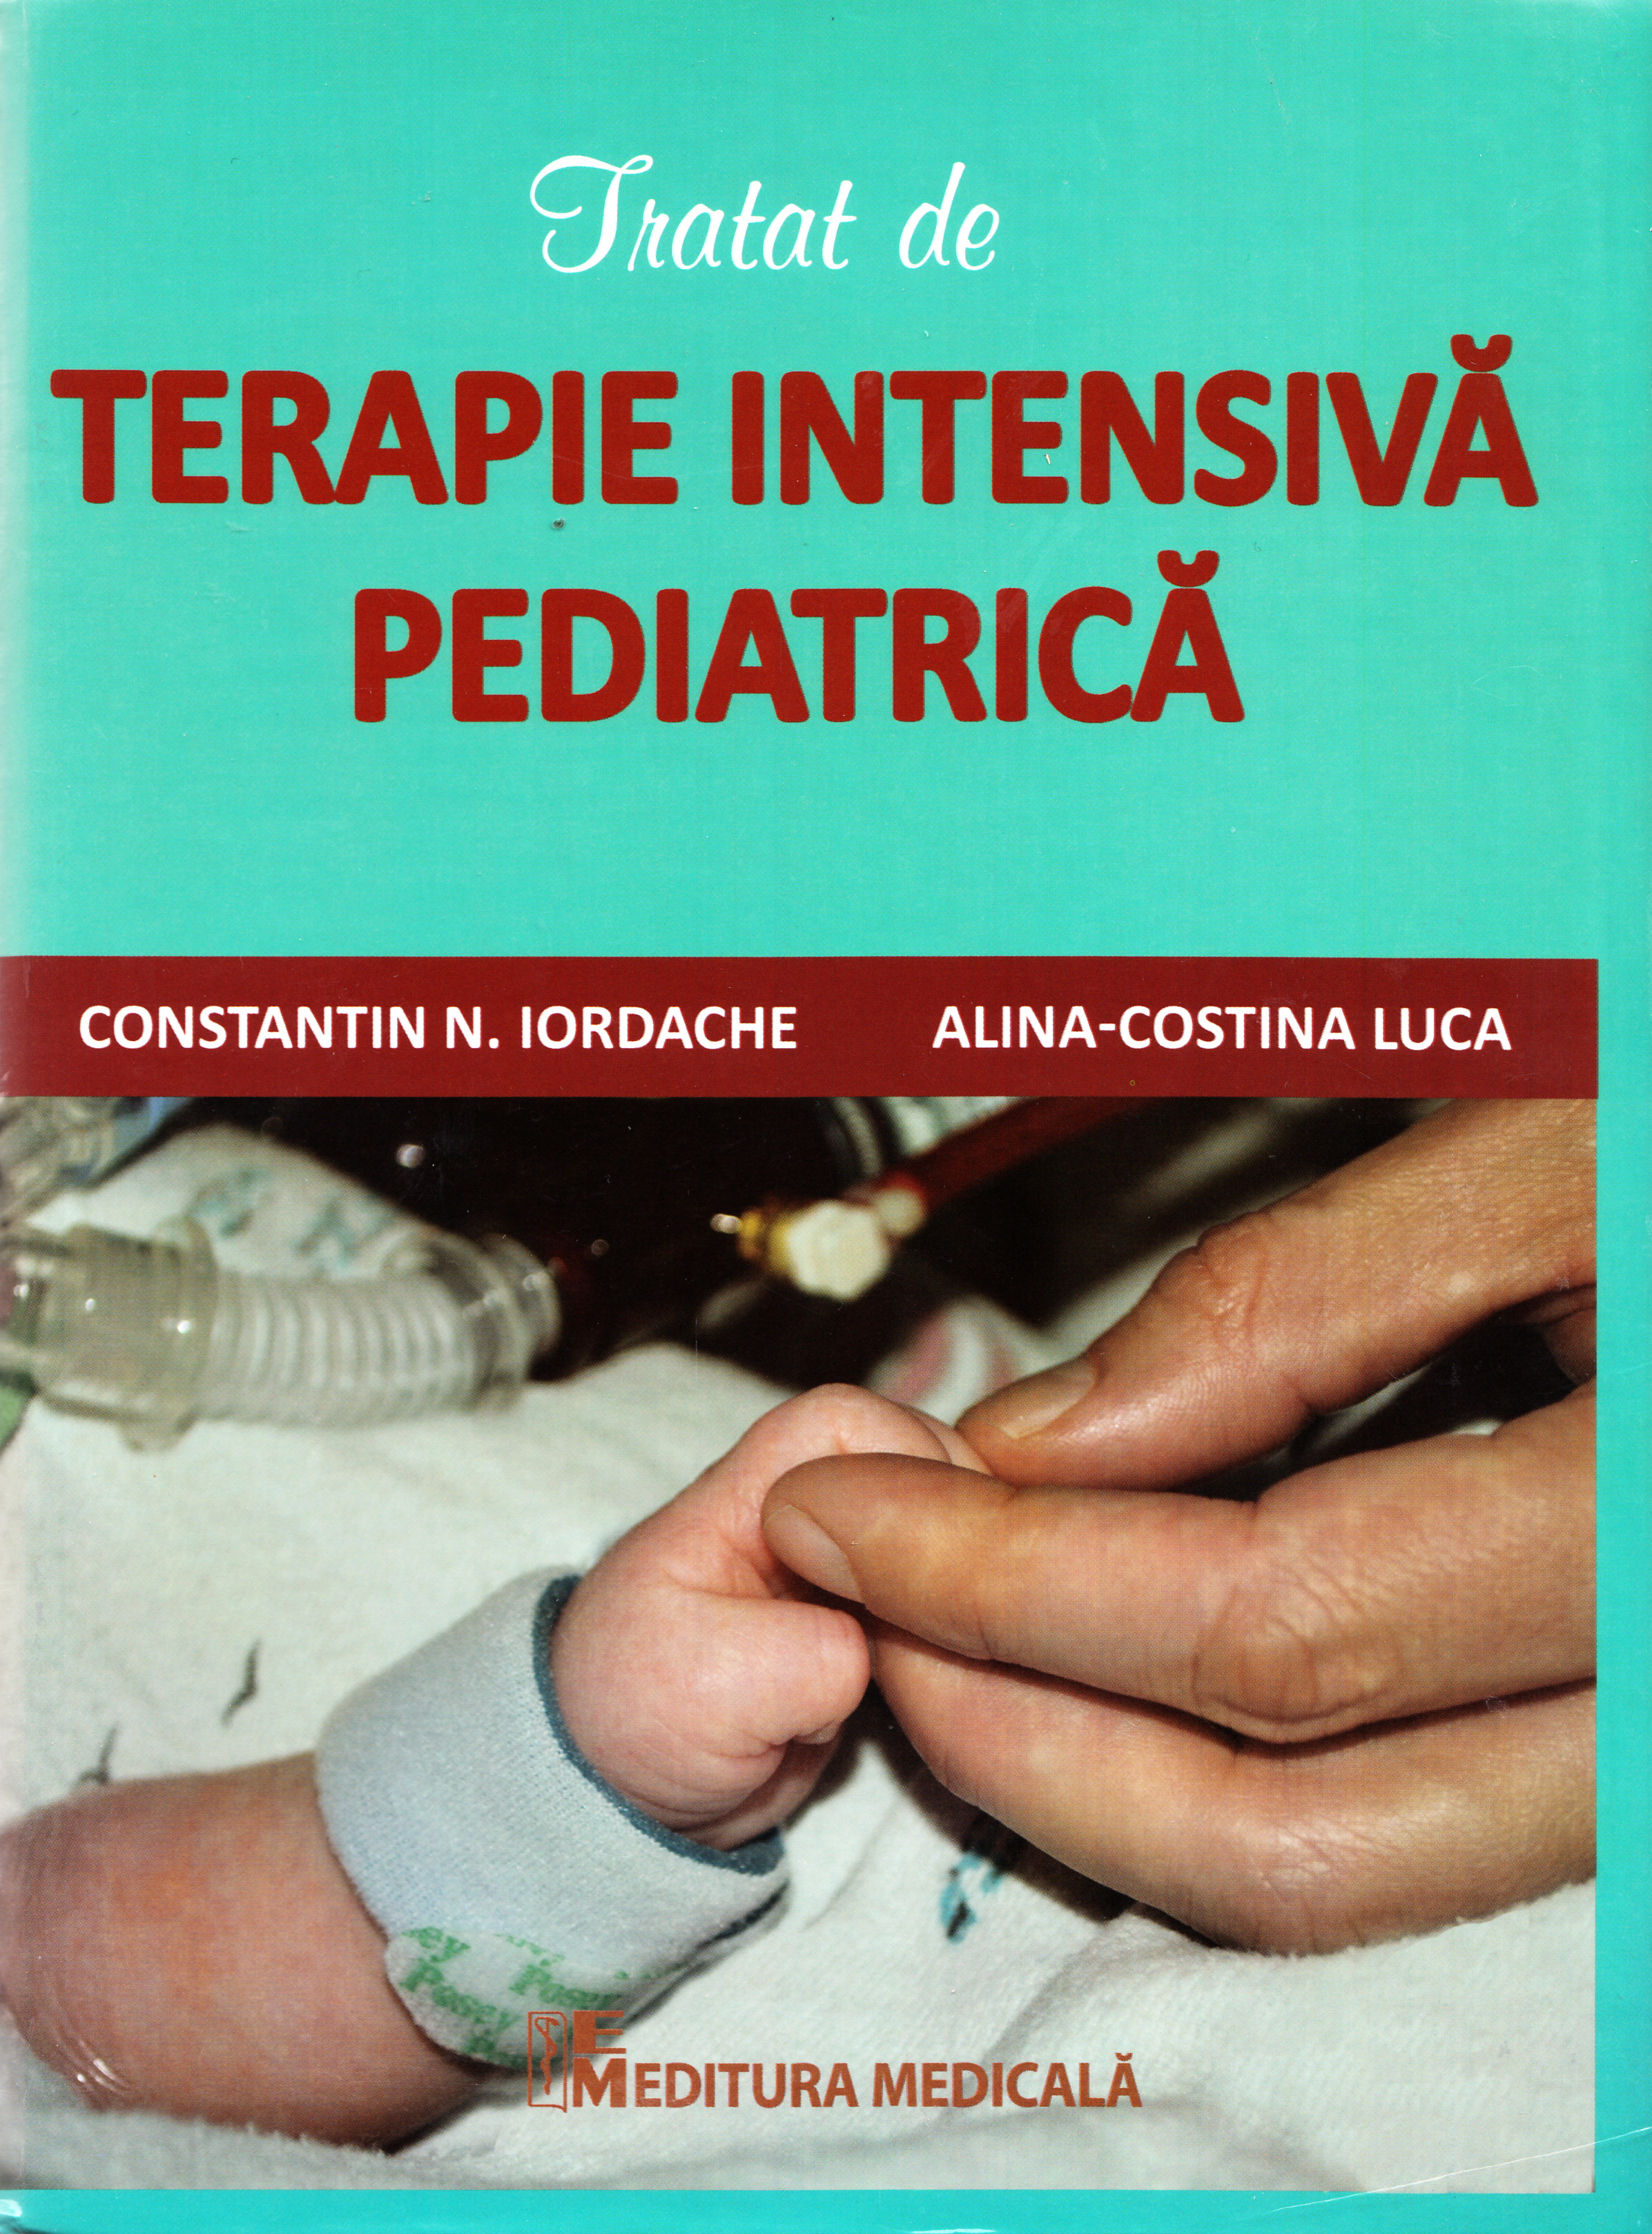 Tratat de terapie intensiva pediatrica - Constatin N. Iordache, Alina-Costina Luca